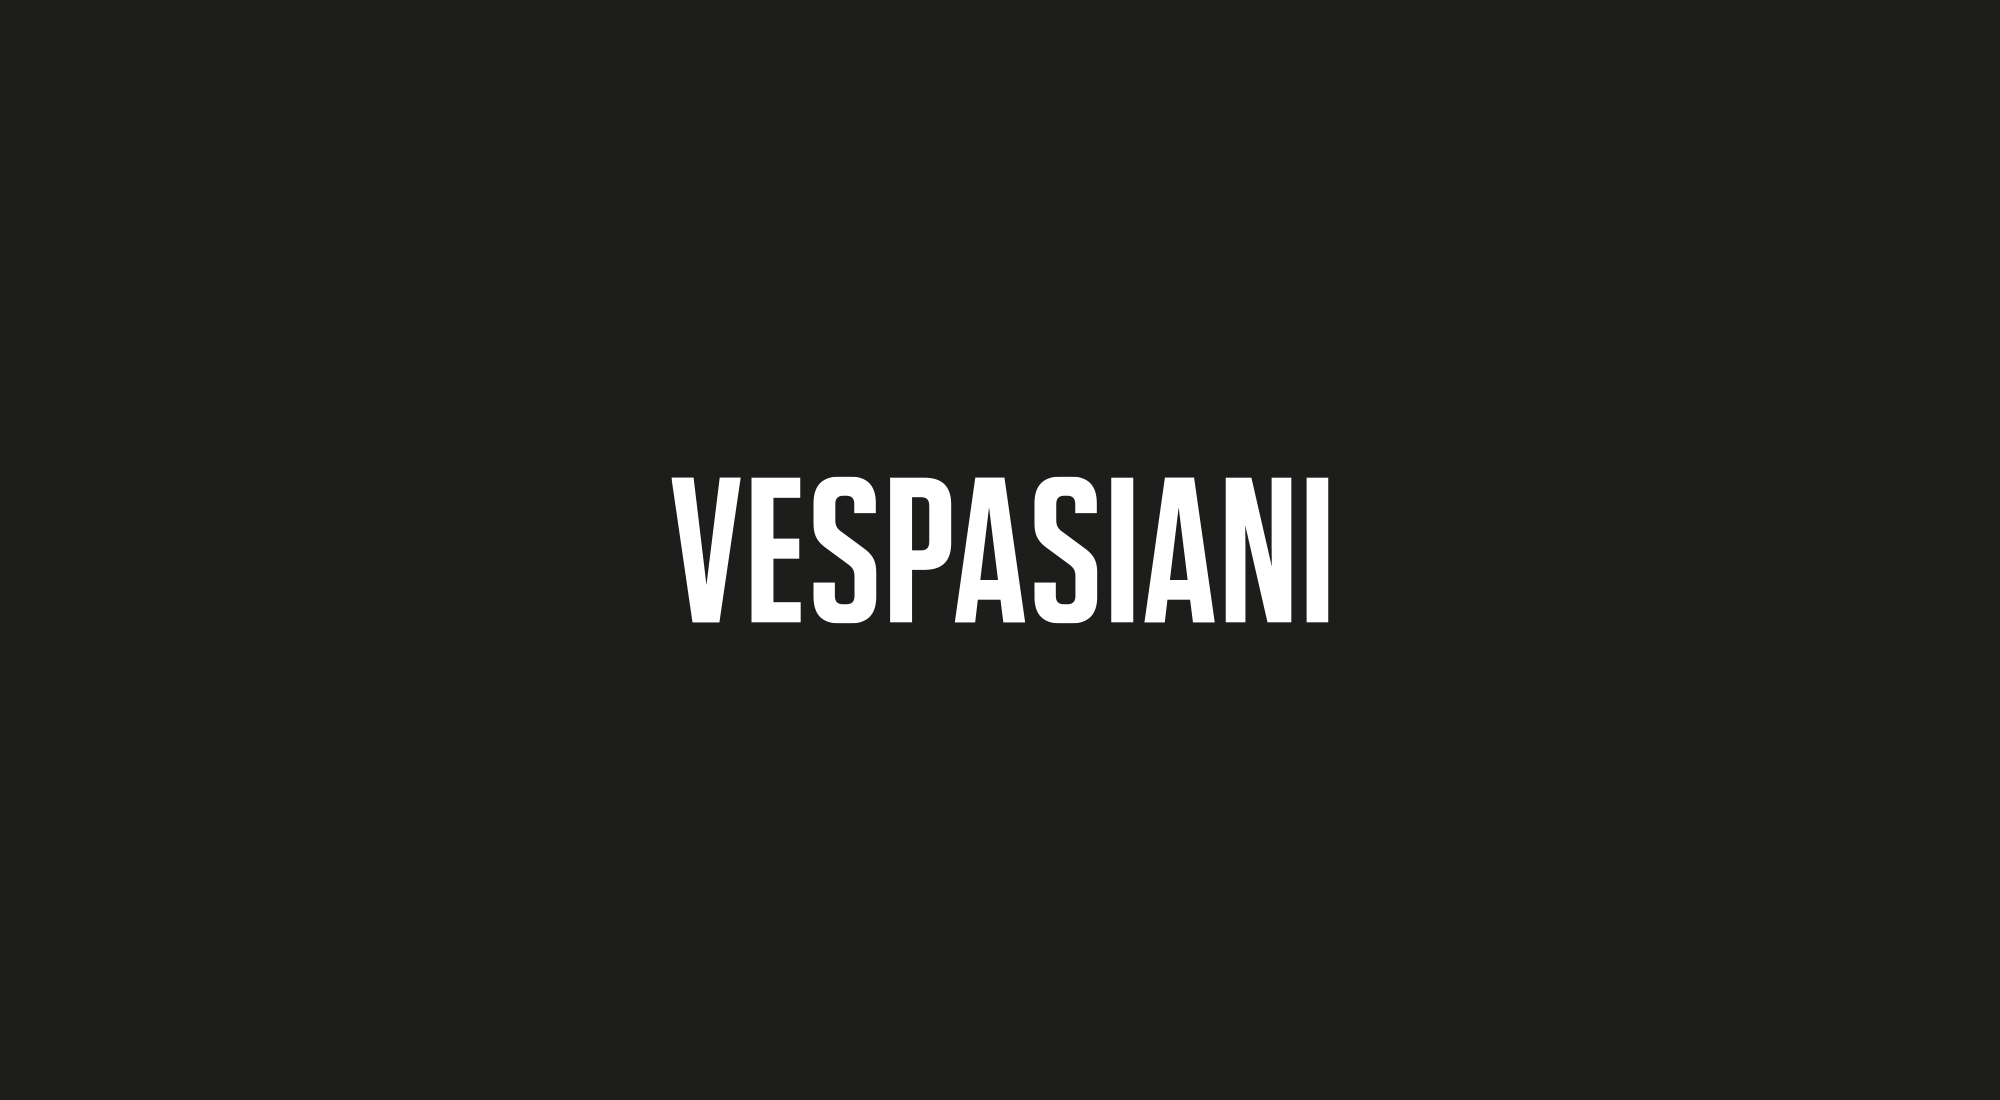 Vespasiani